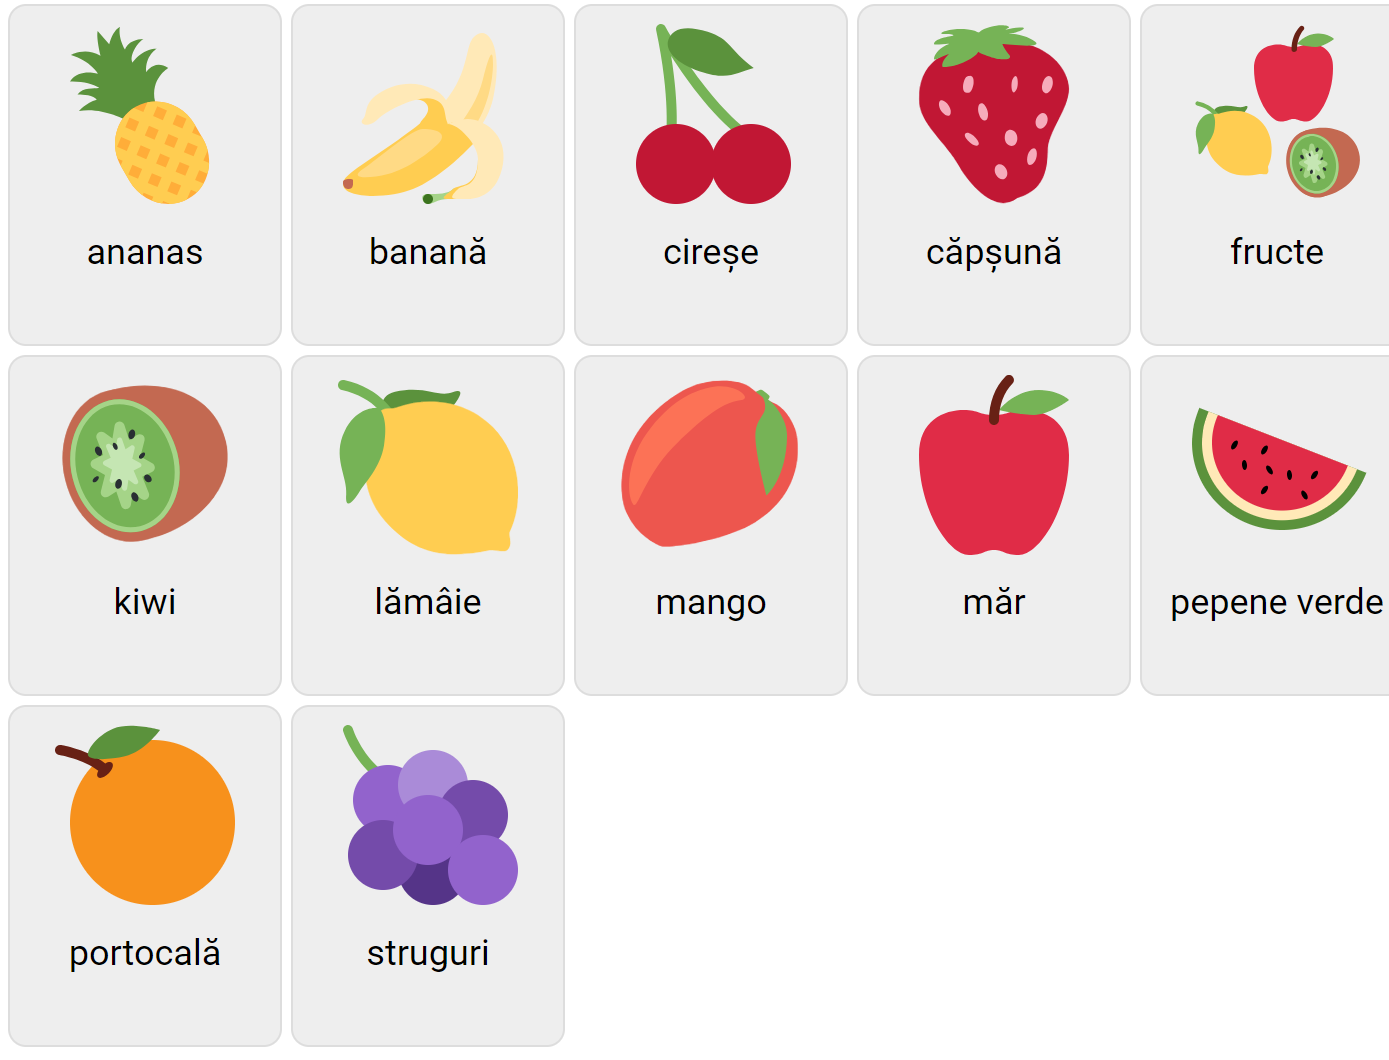 Frukter på rumänska